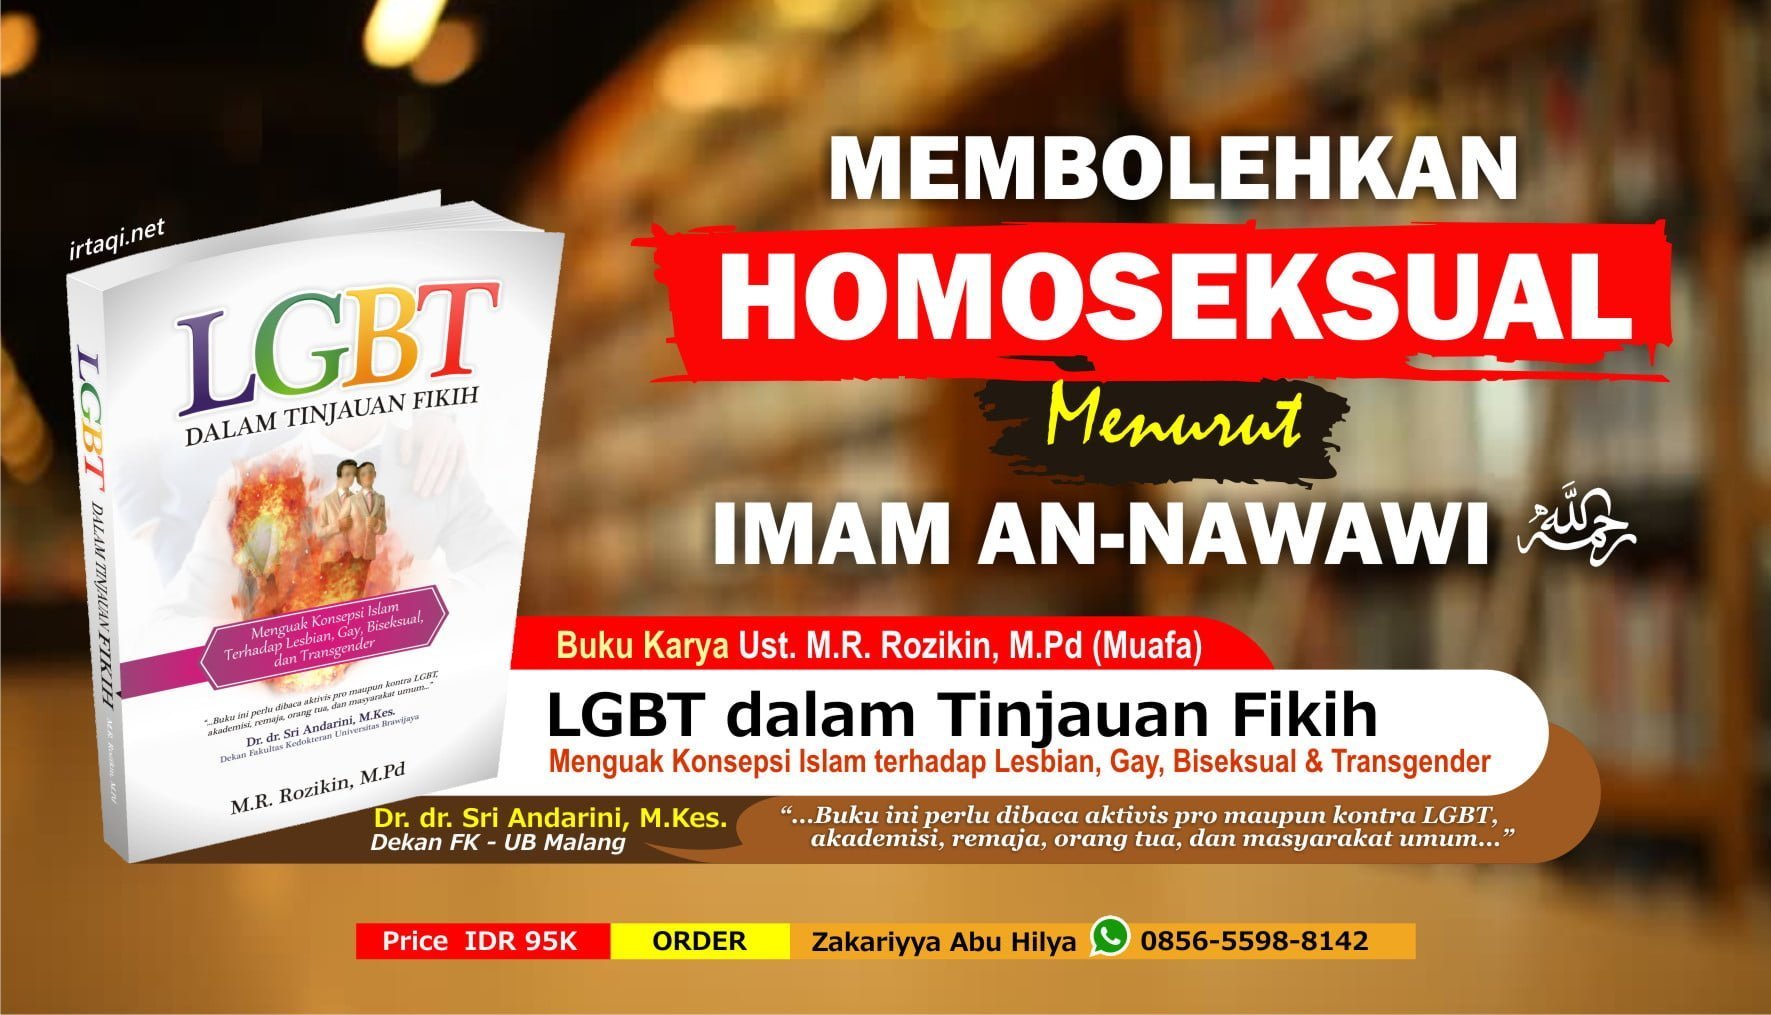 MEMBOLEHKAN HOMOSEKSUAL MENURUT IMAM AN-NAWAWI